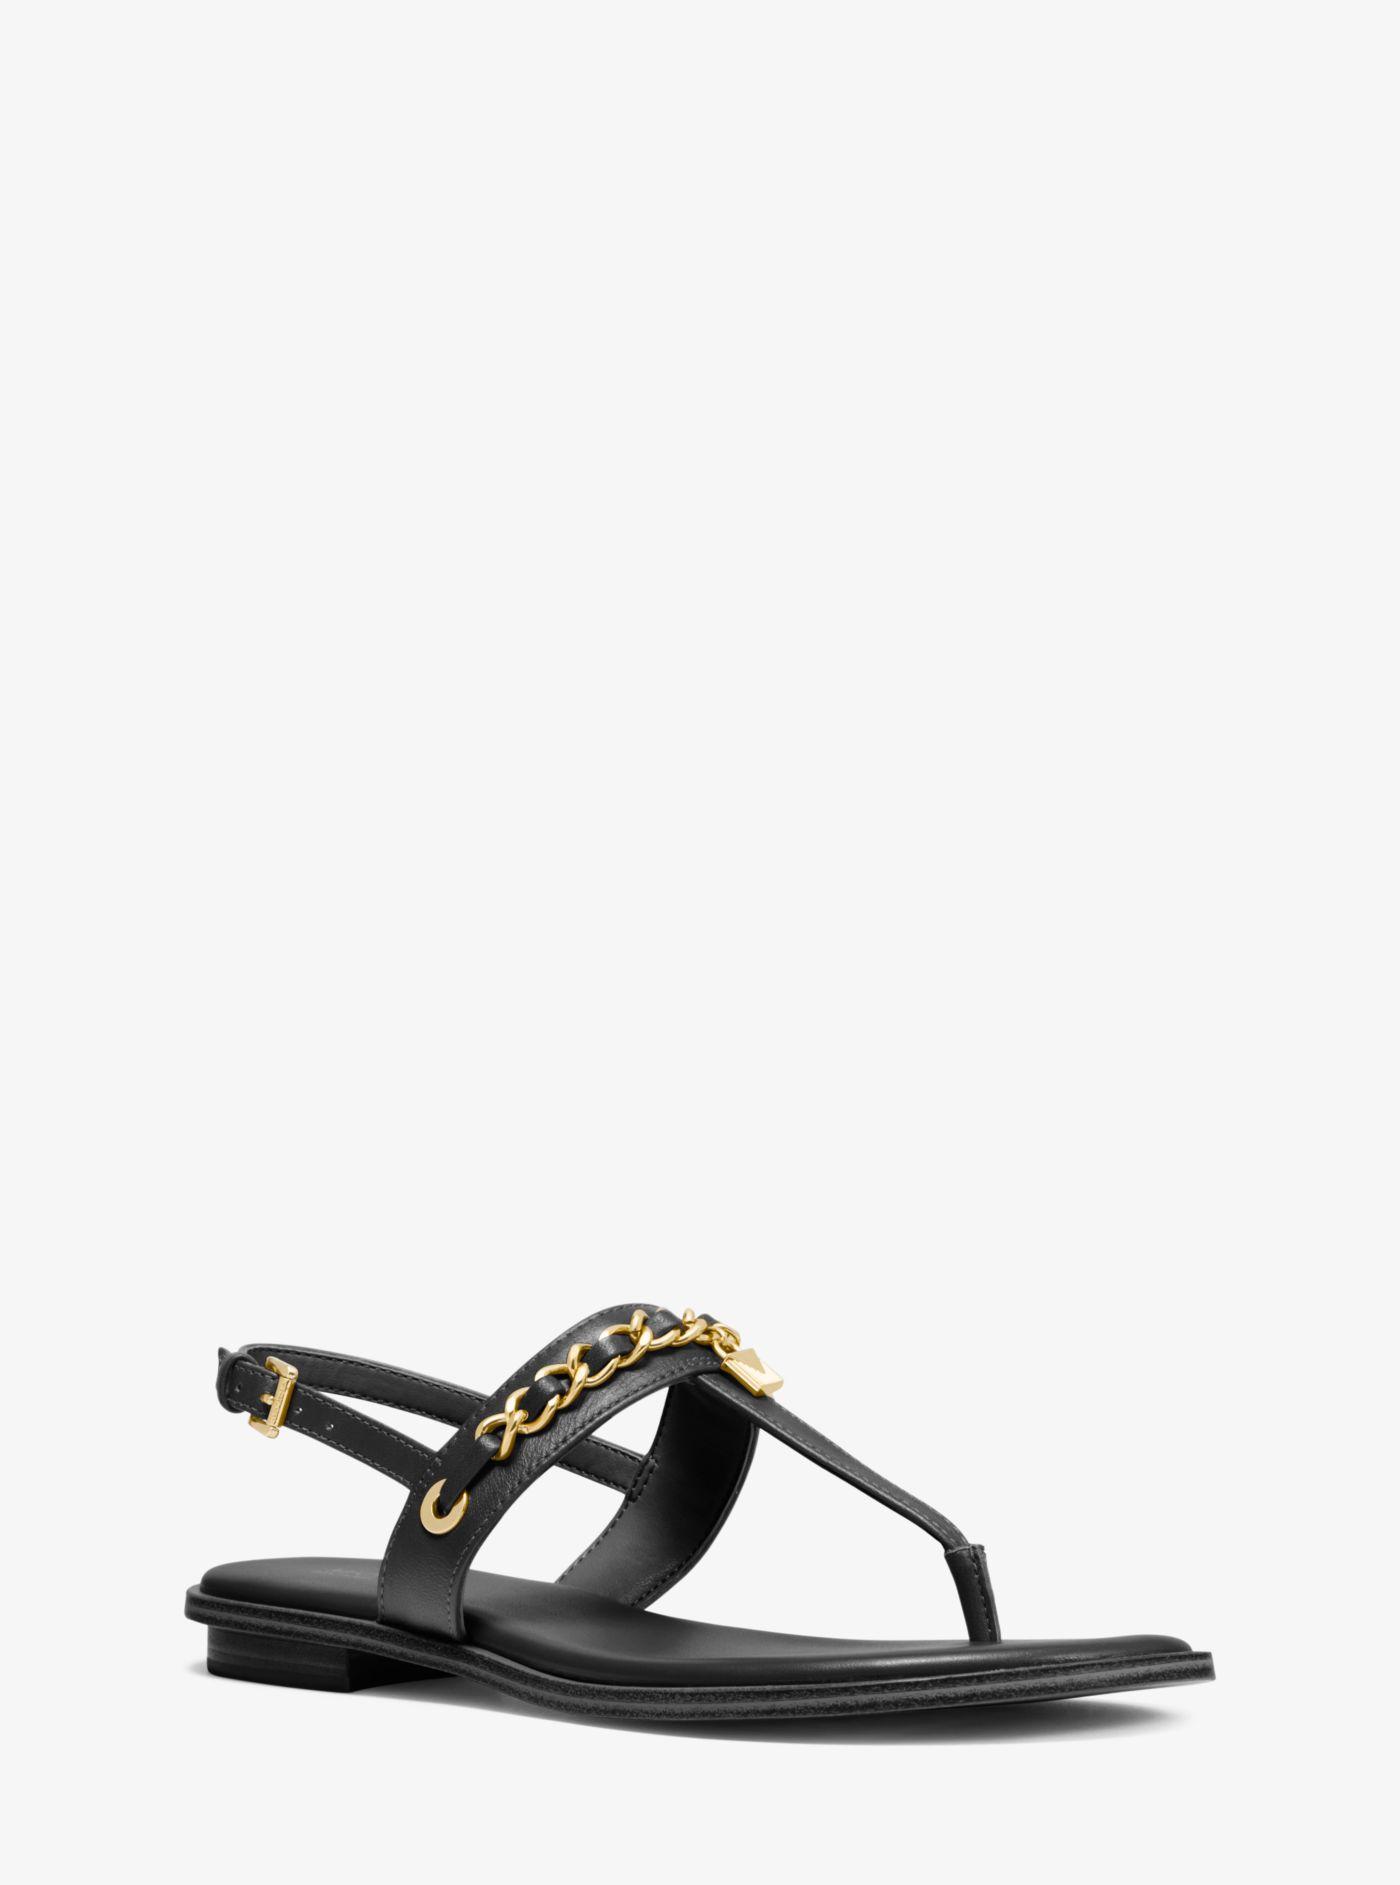 Michael Kors Elsa Leather Sandal in Black | Lyst